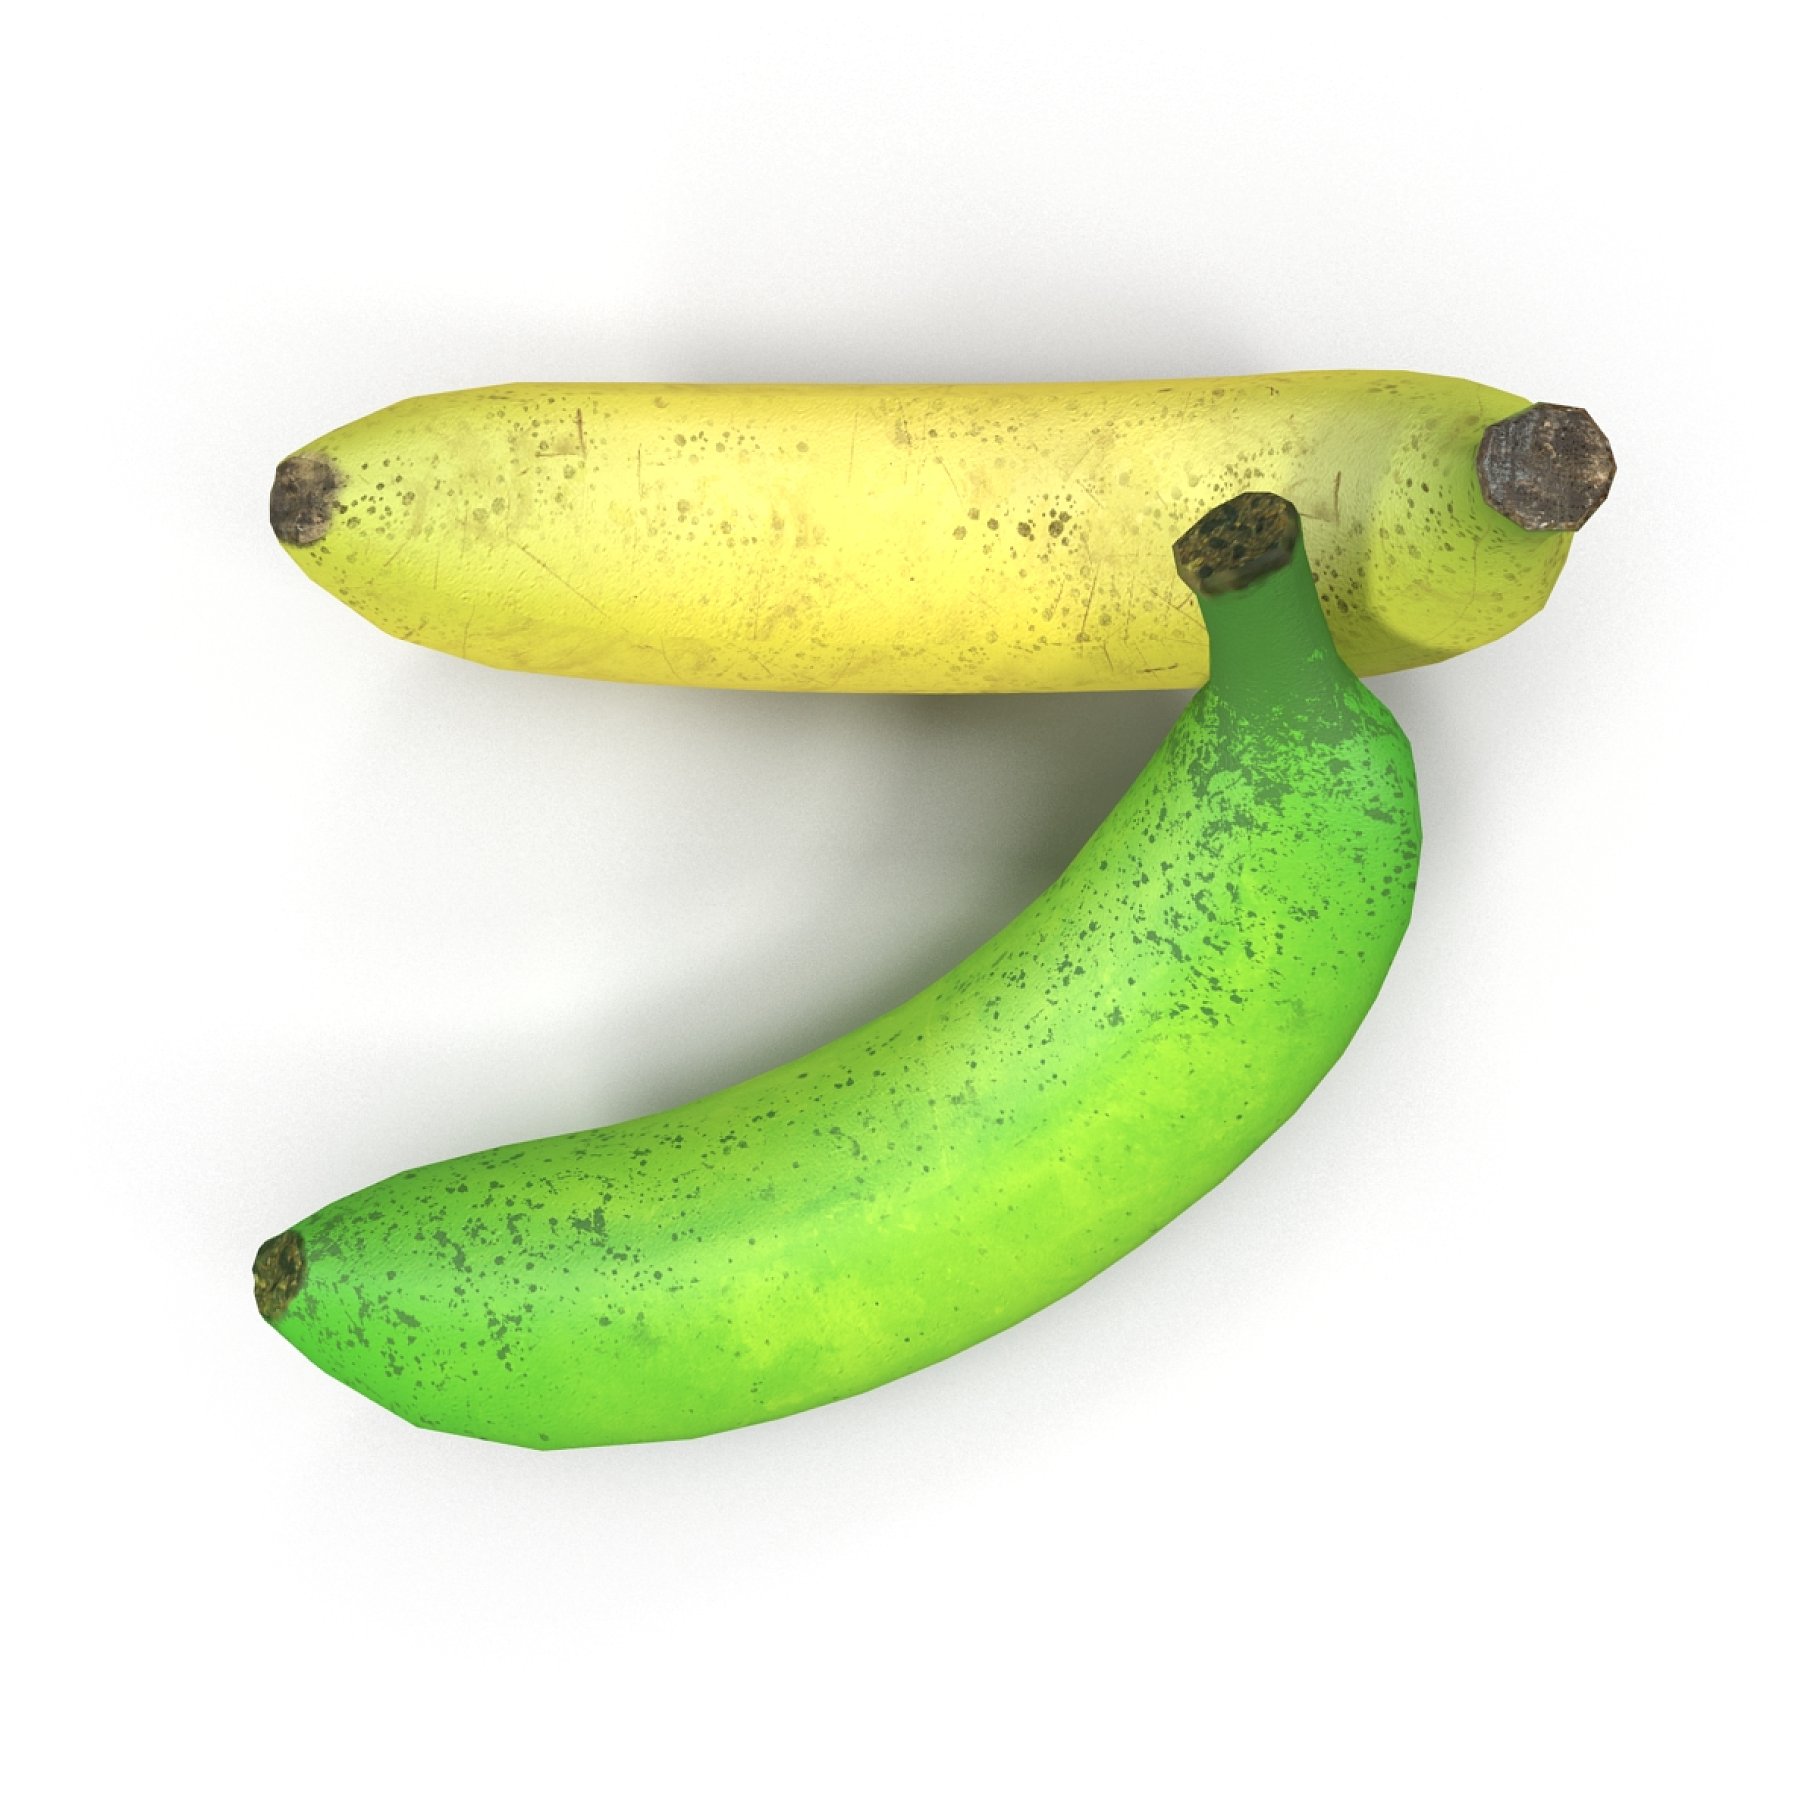 Two bananas on top.